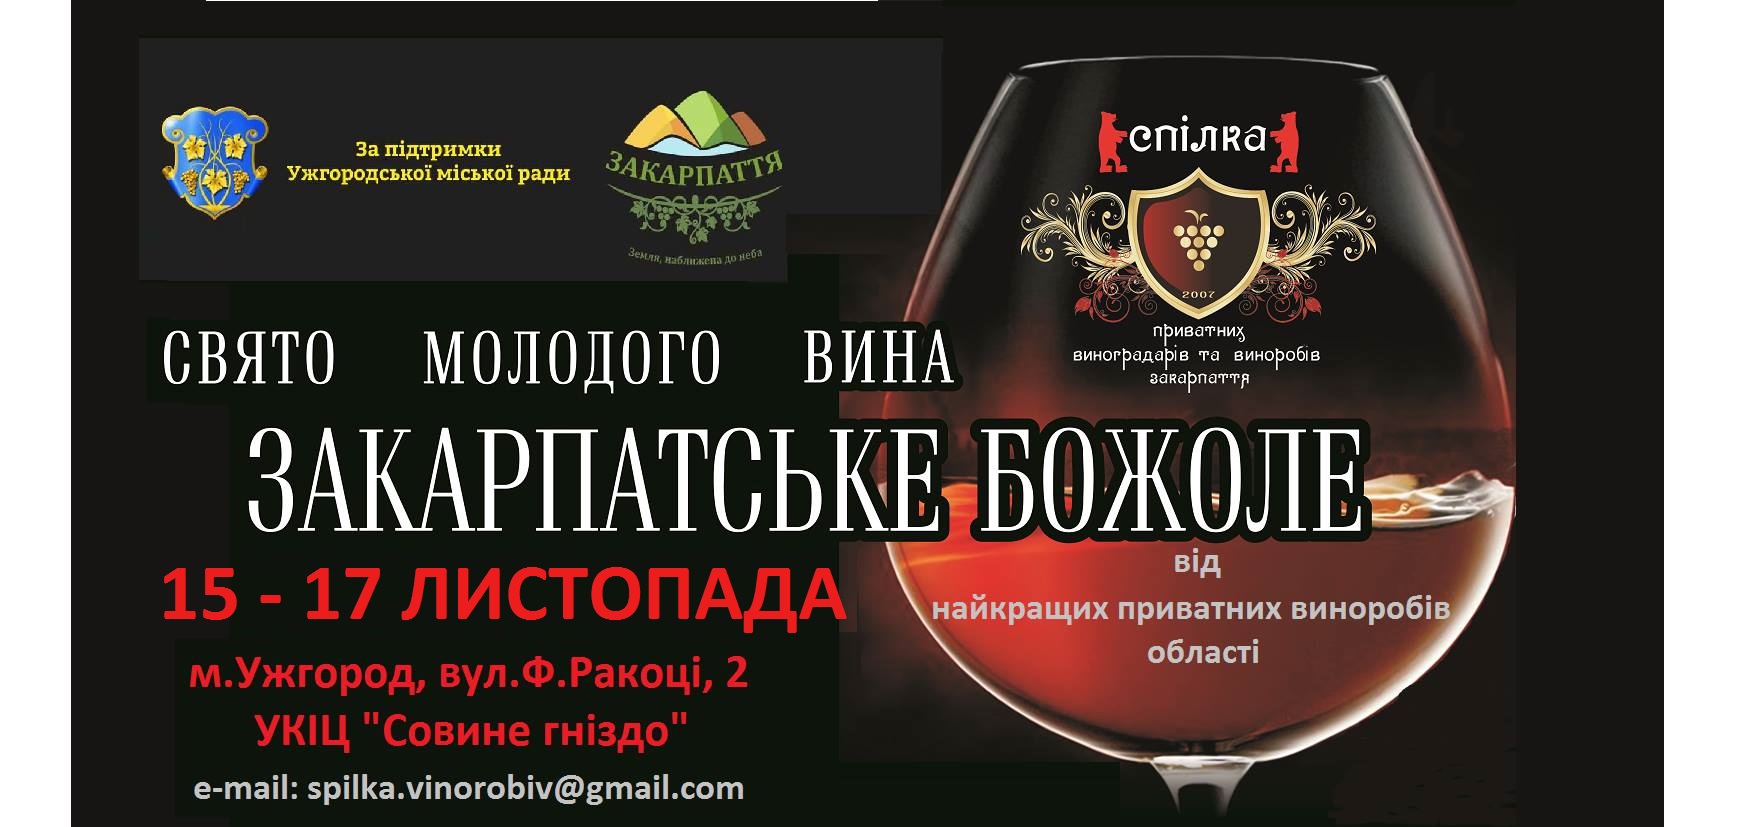 Свято молодого вина «Закарпатське Божоле» – в Ужгороді 15-17 листопада